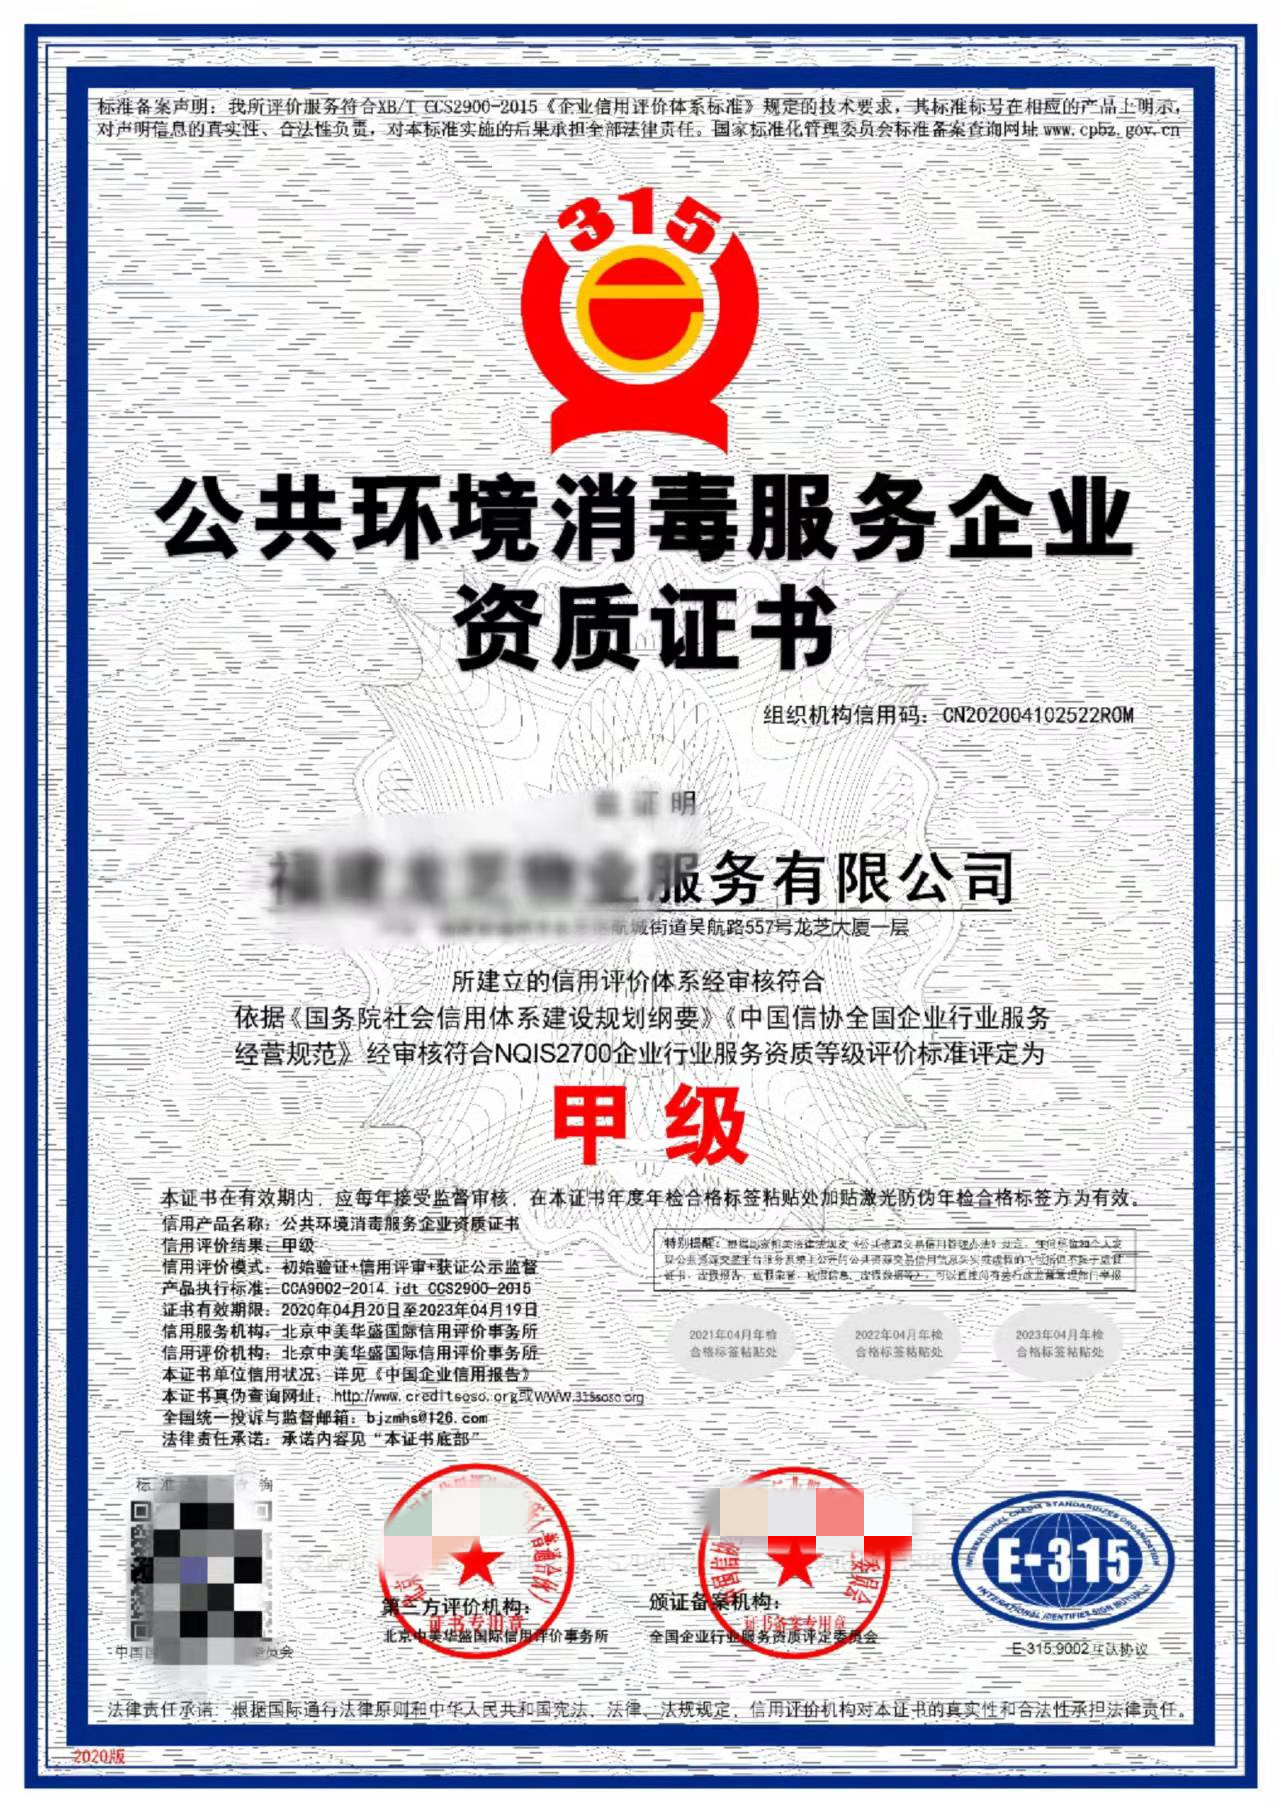 郑州公共环境消毒服务资质申报一站式服务